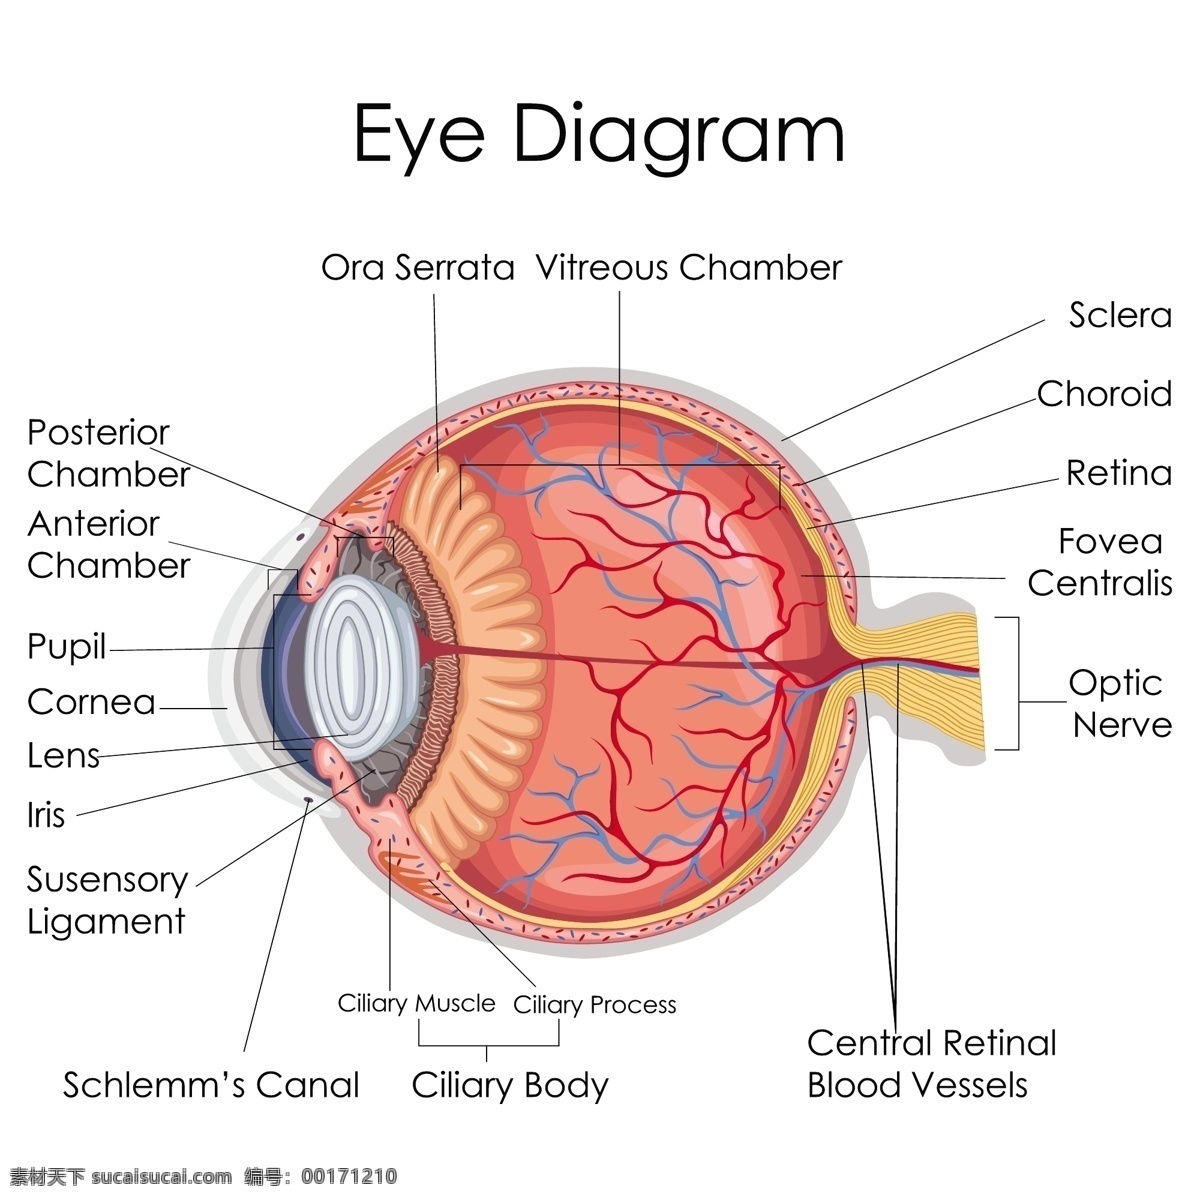 眼球结构 眼球 眼珠 人体器官 剖面图 医疗 卫生 医学 人体解剖 解剖图 医疗教学 器官示意图 胃部 脏器 胰腺 泌尿系统 大脑 眼睛 脑部 肾脏